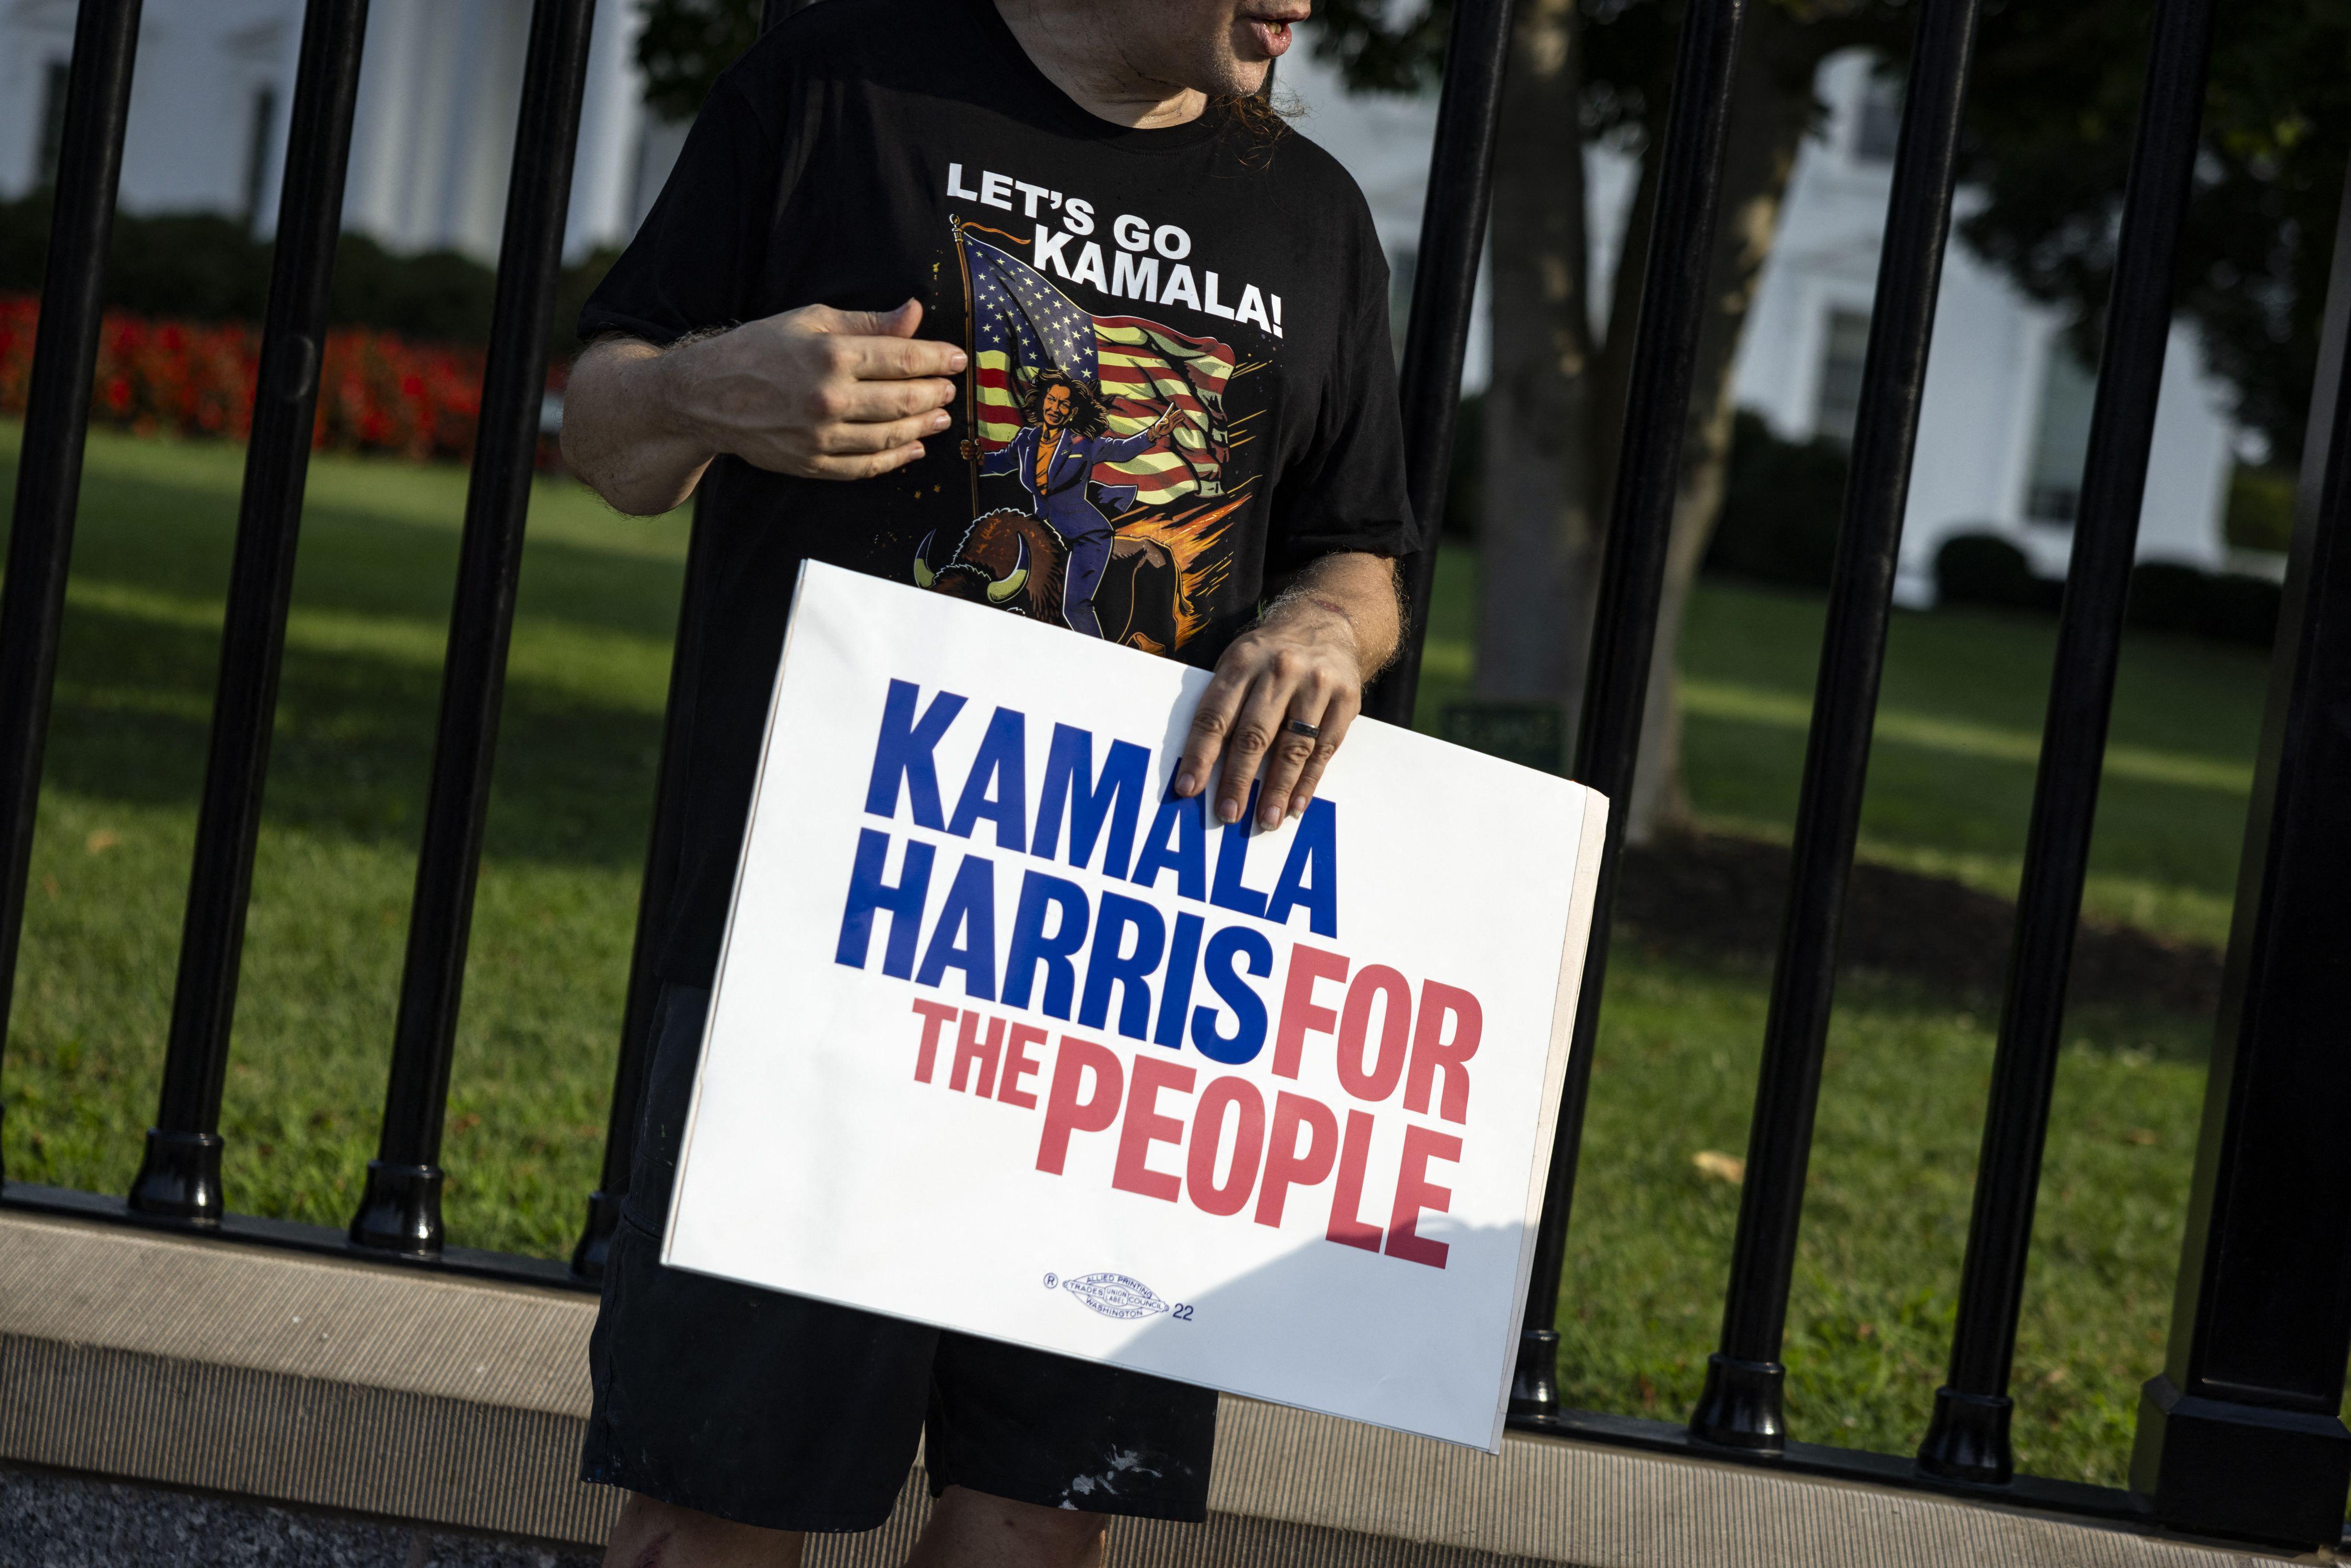 Ritiro Biden - la sfida di Kamala Harris: oggi previsto discorso alla Casa Bianca